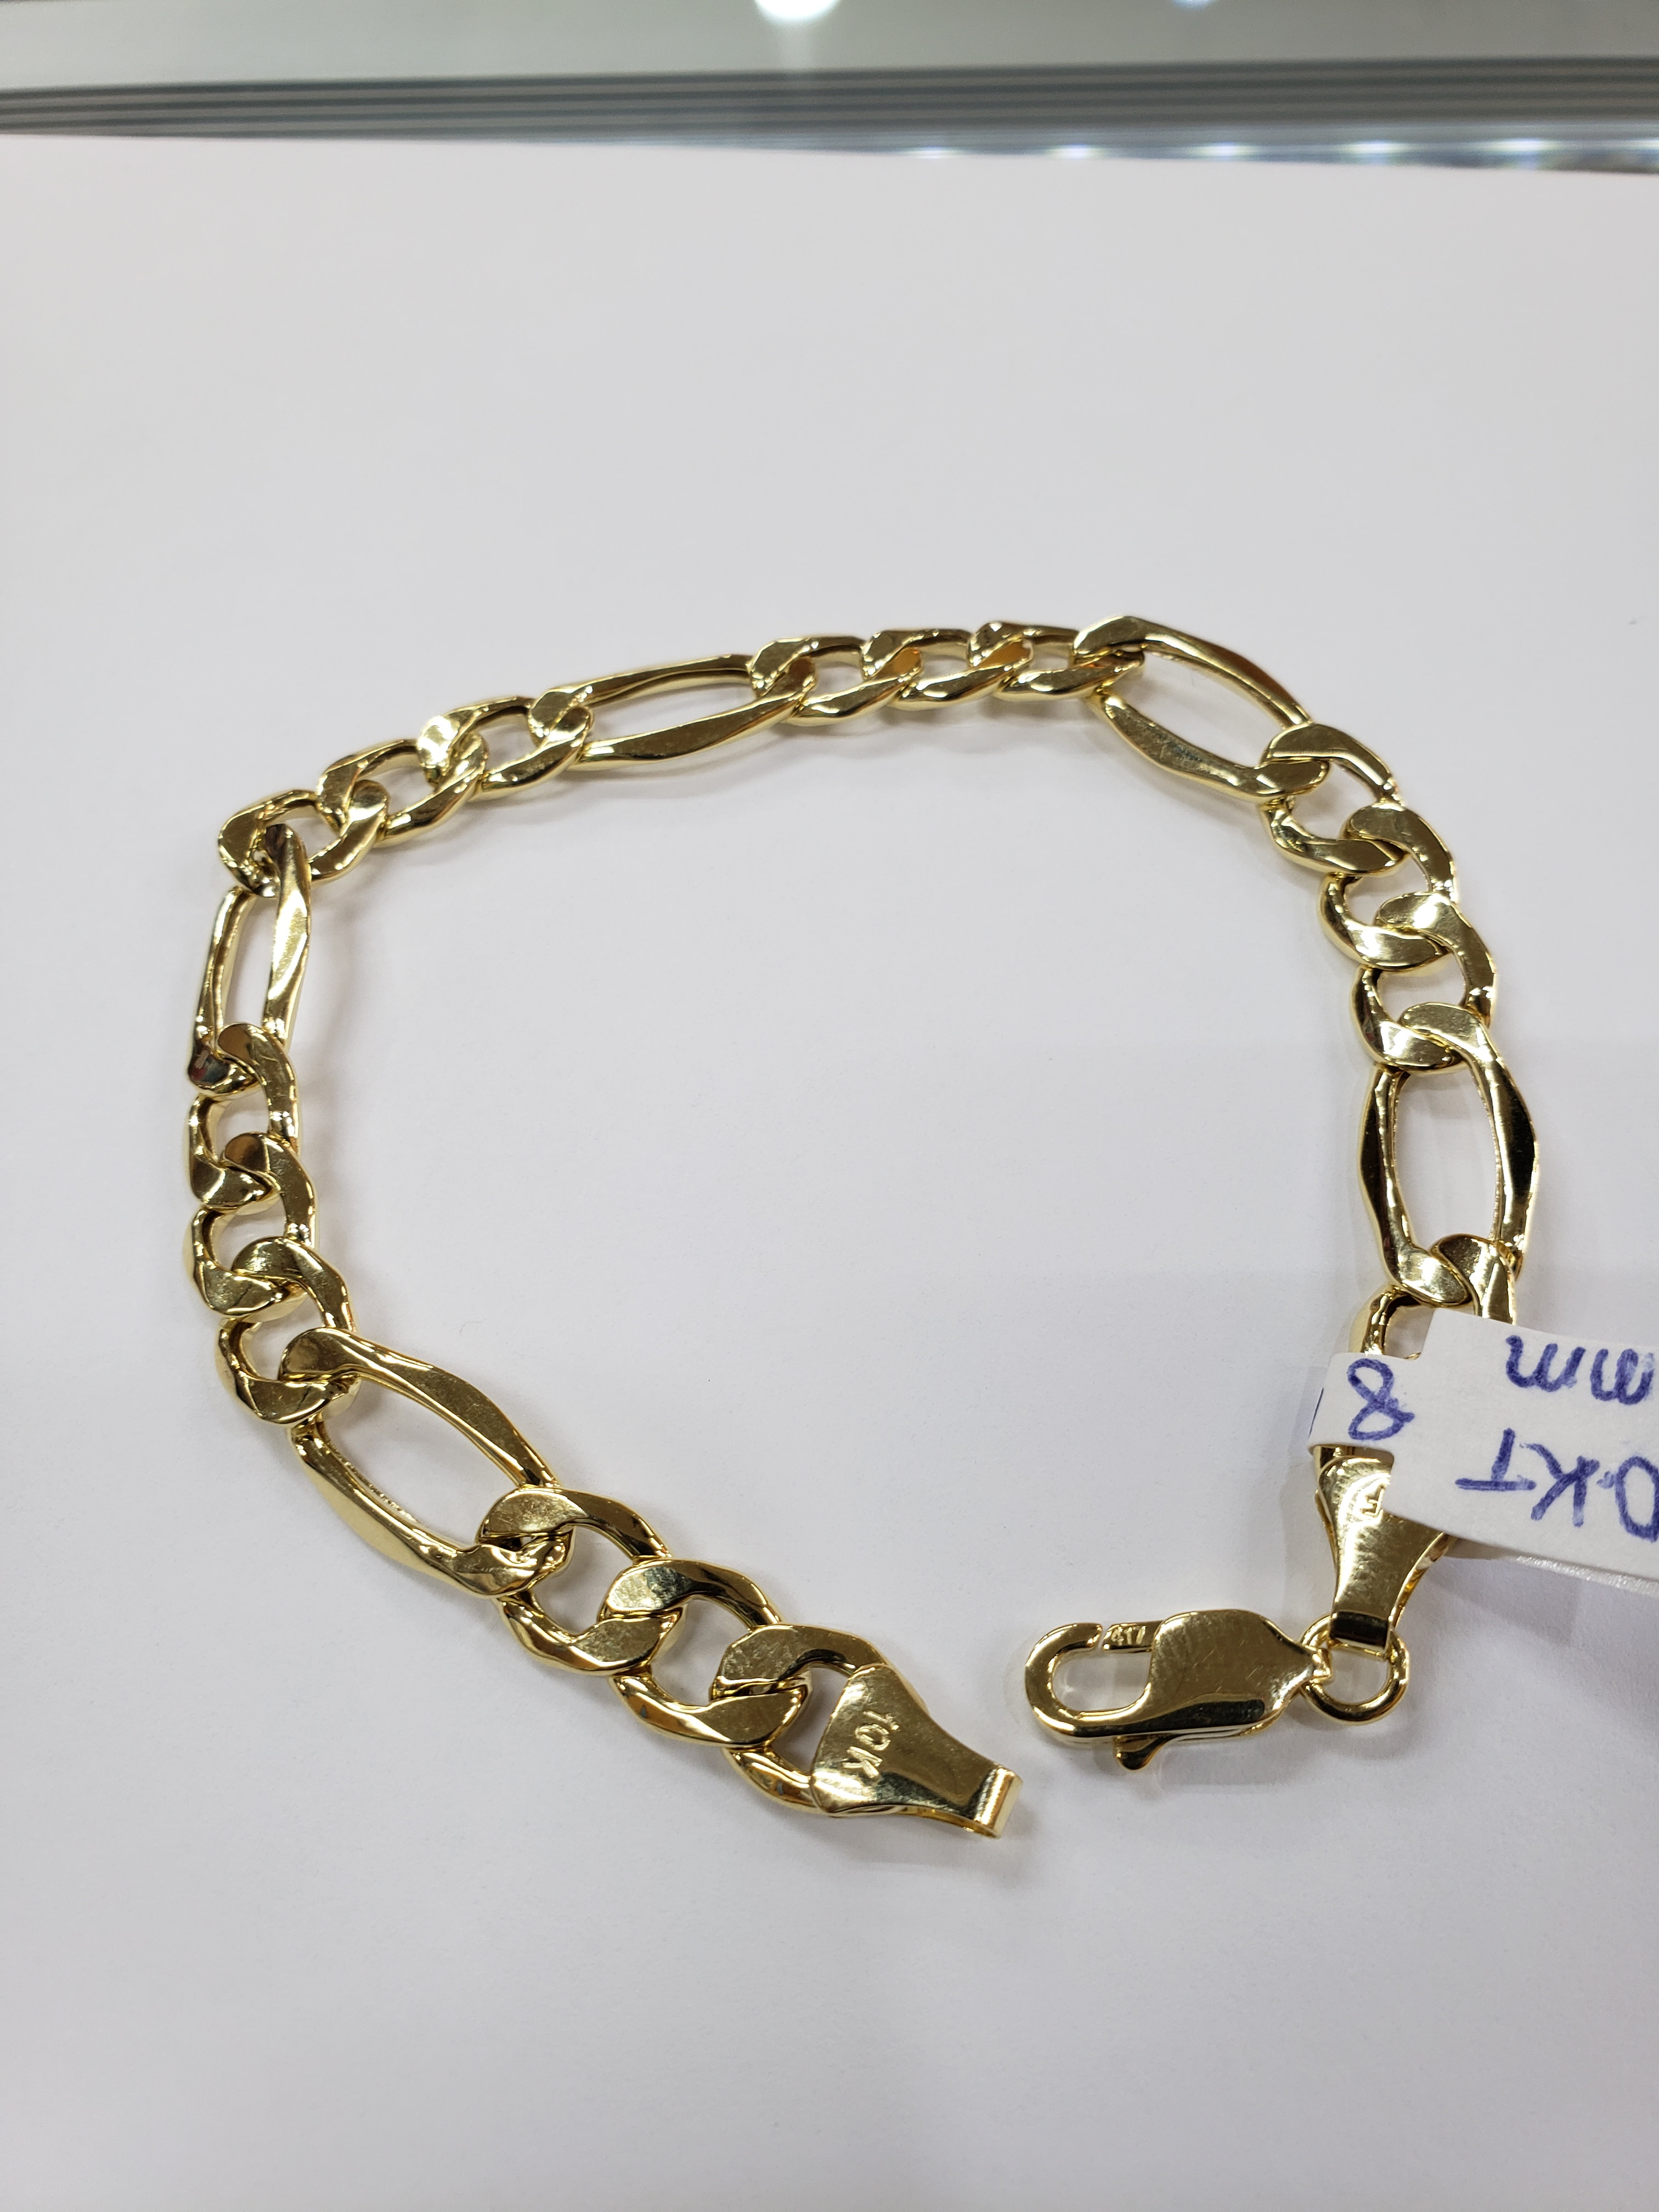 Quality Italian Gold Jewelry from Zales  Zales